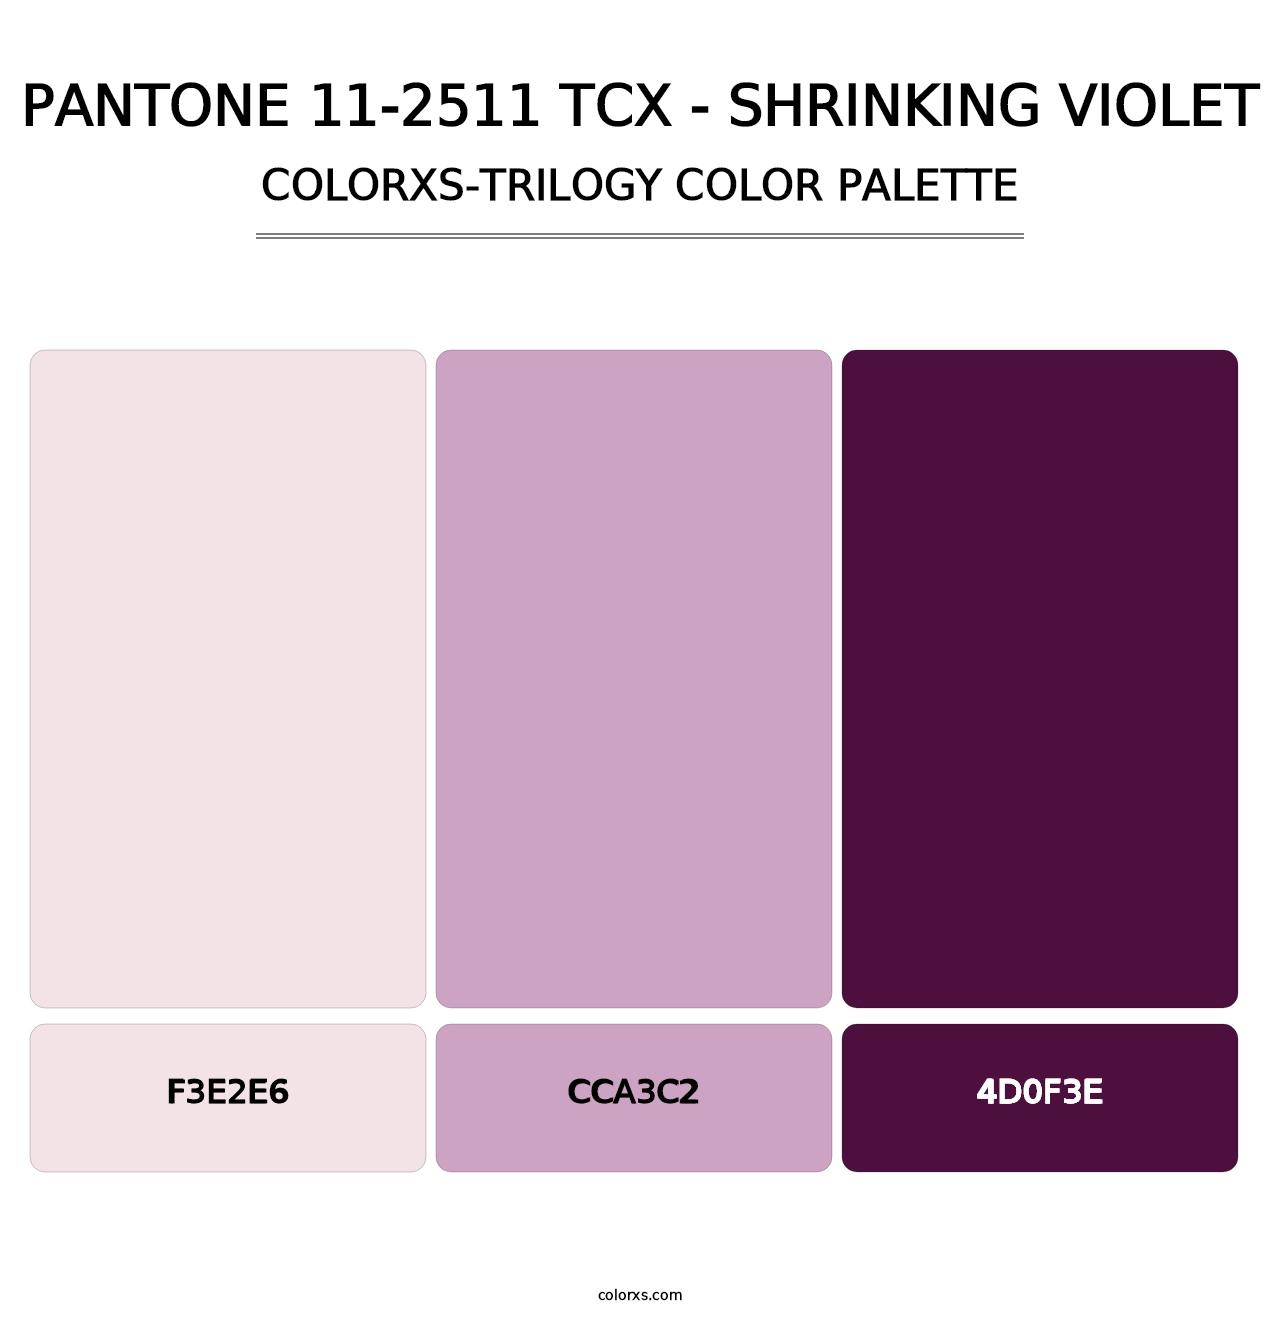 PANTONE 11-2511 TCX - Shrinking Violet - Colorxs Trilogy Palette